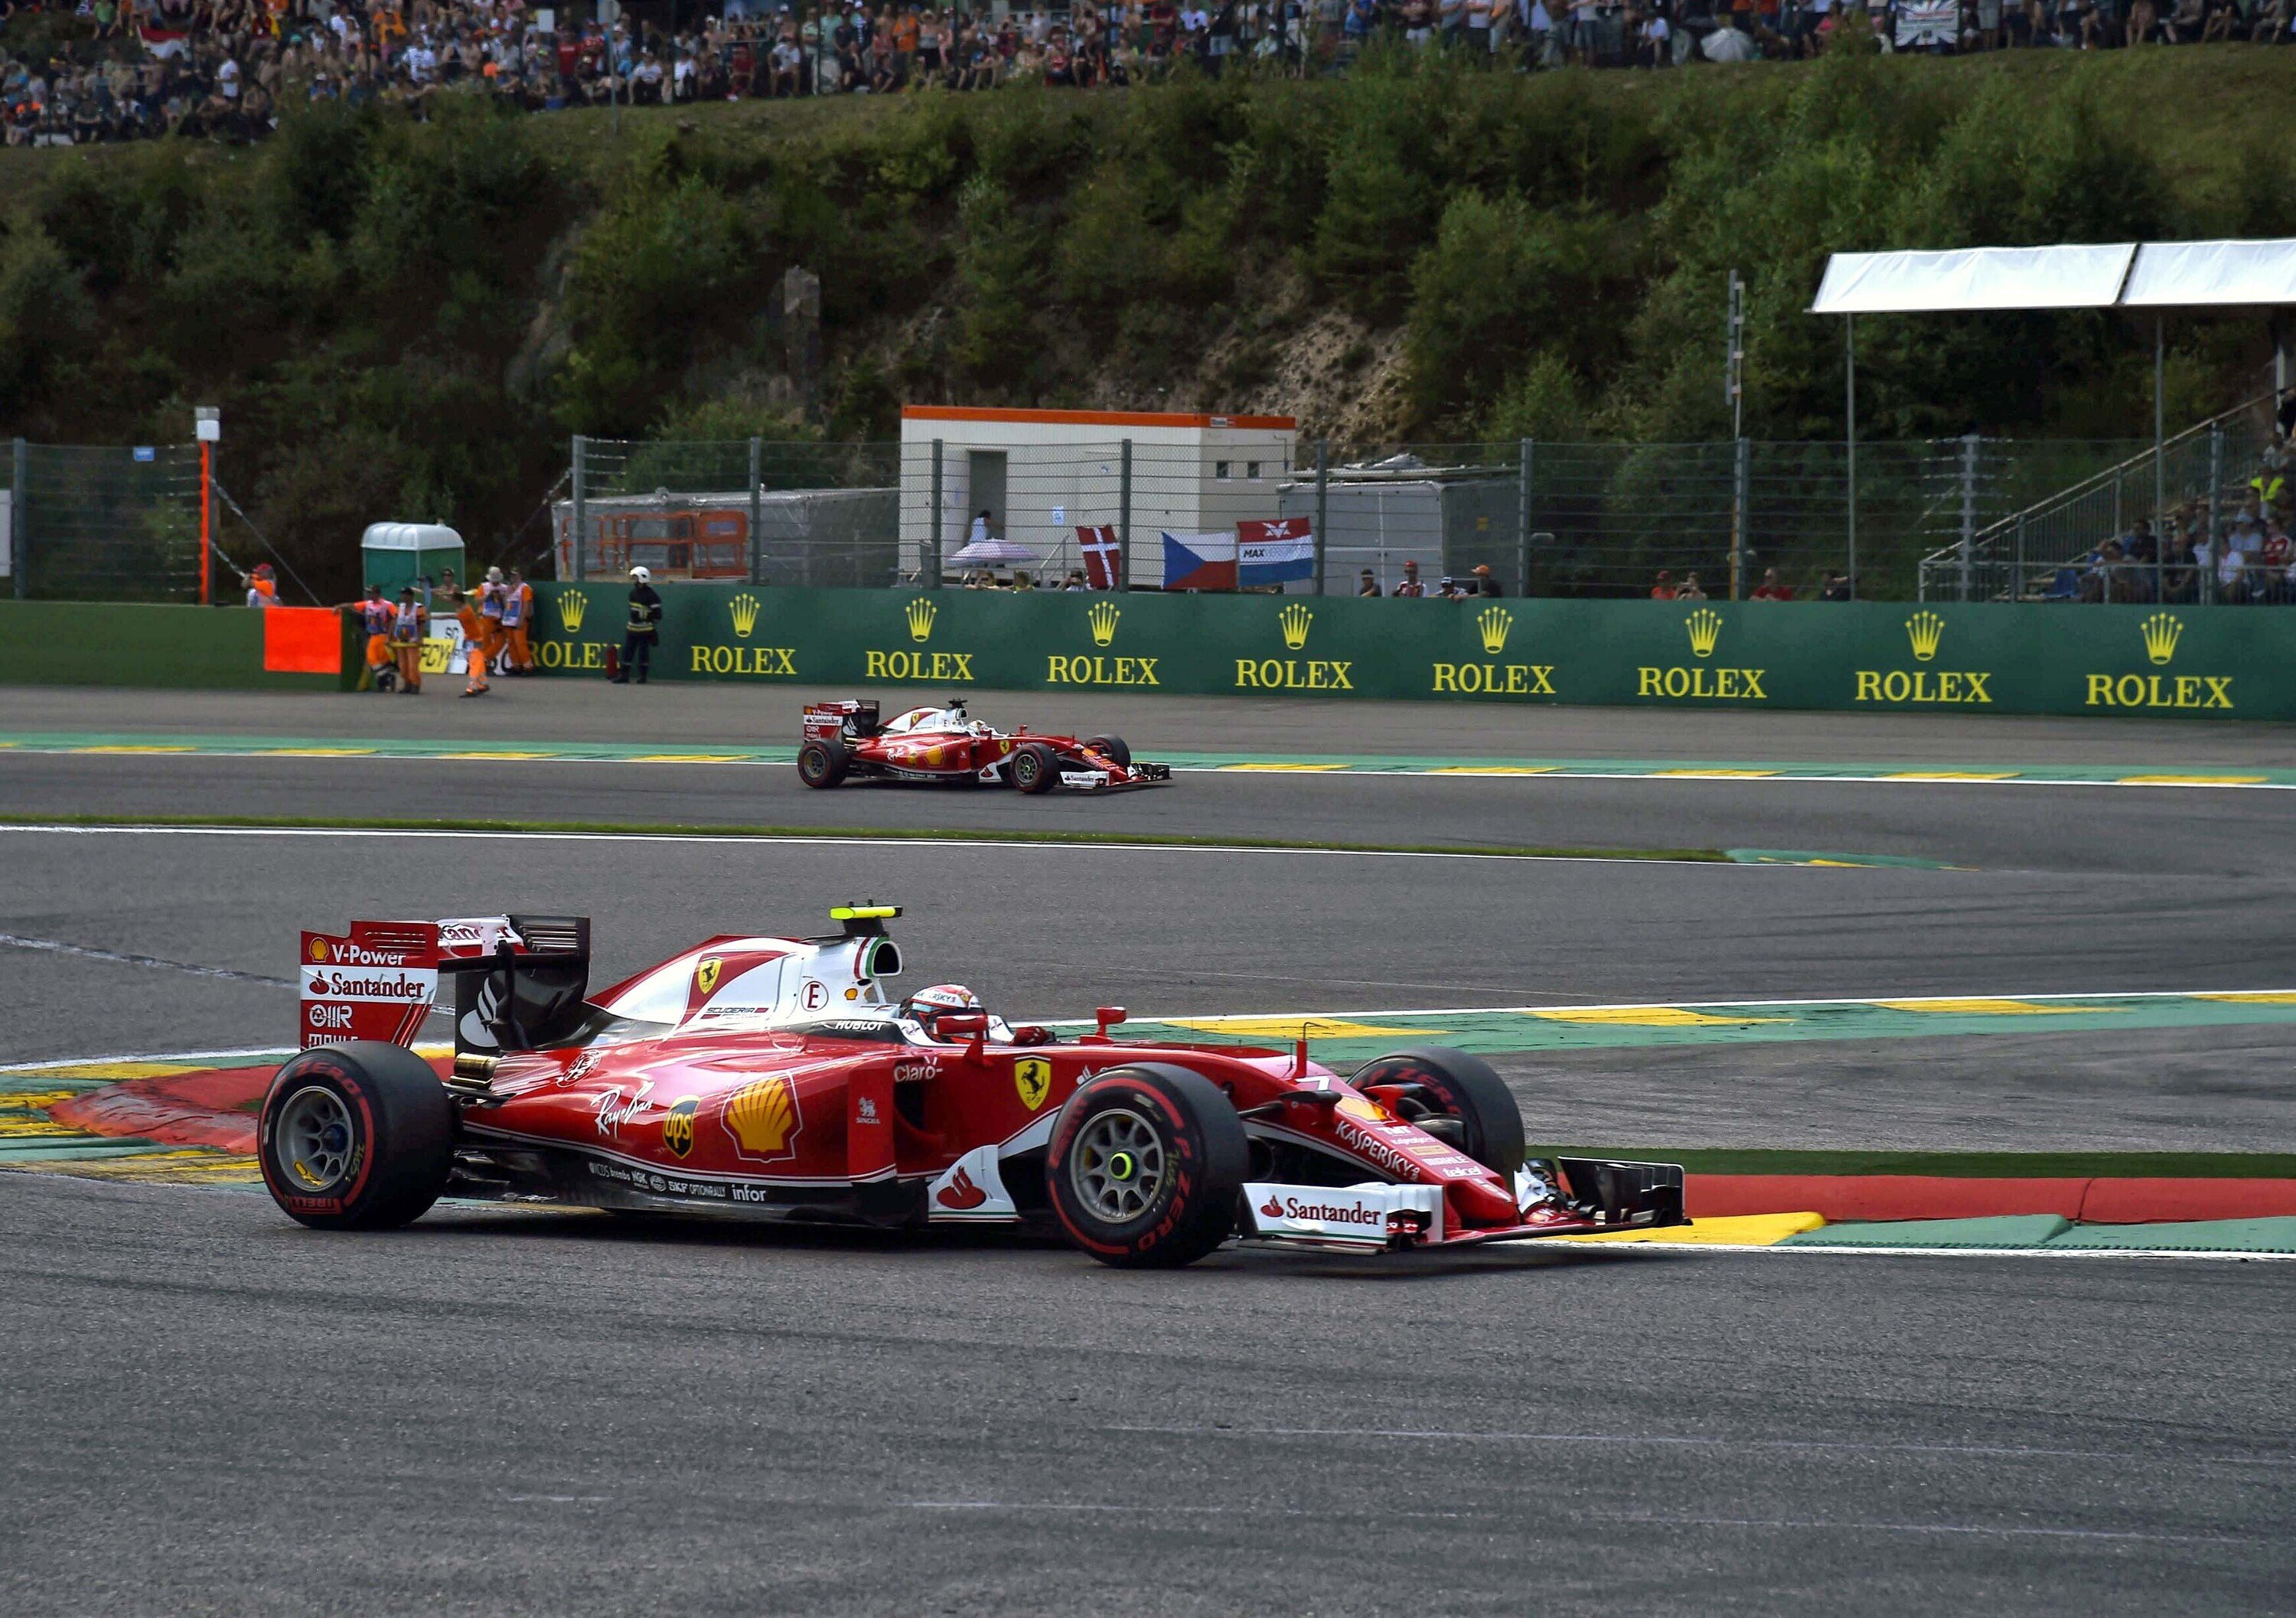 F1, Gp Belgio 2016: Ferrari, qualcosa non va tra Vettel e Raikkonen